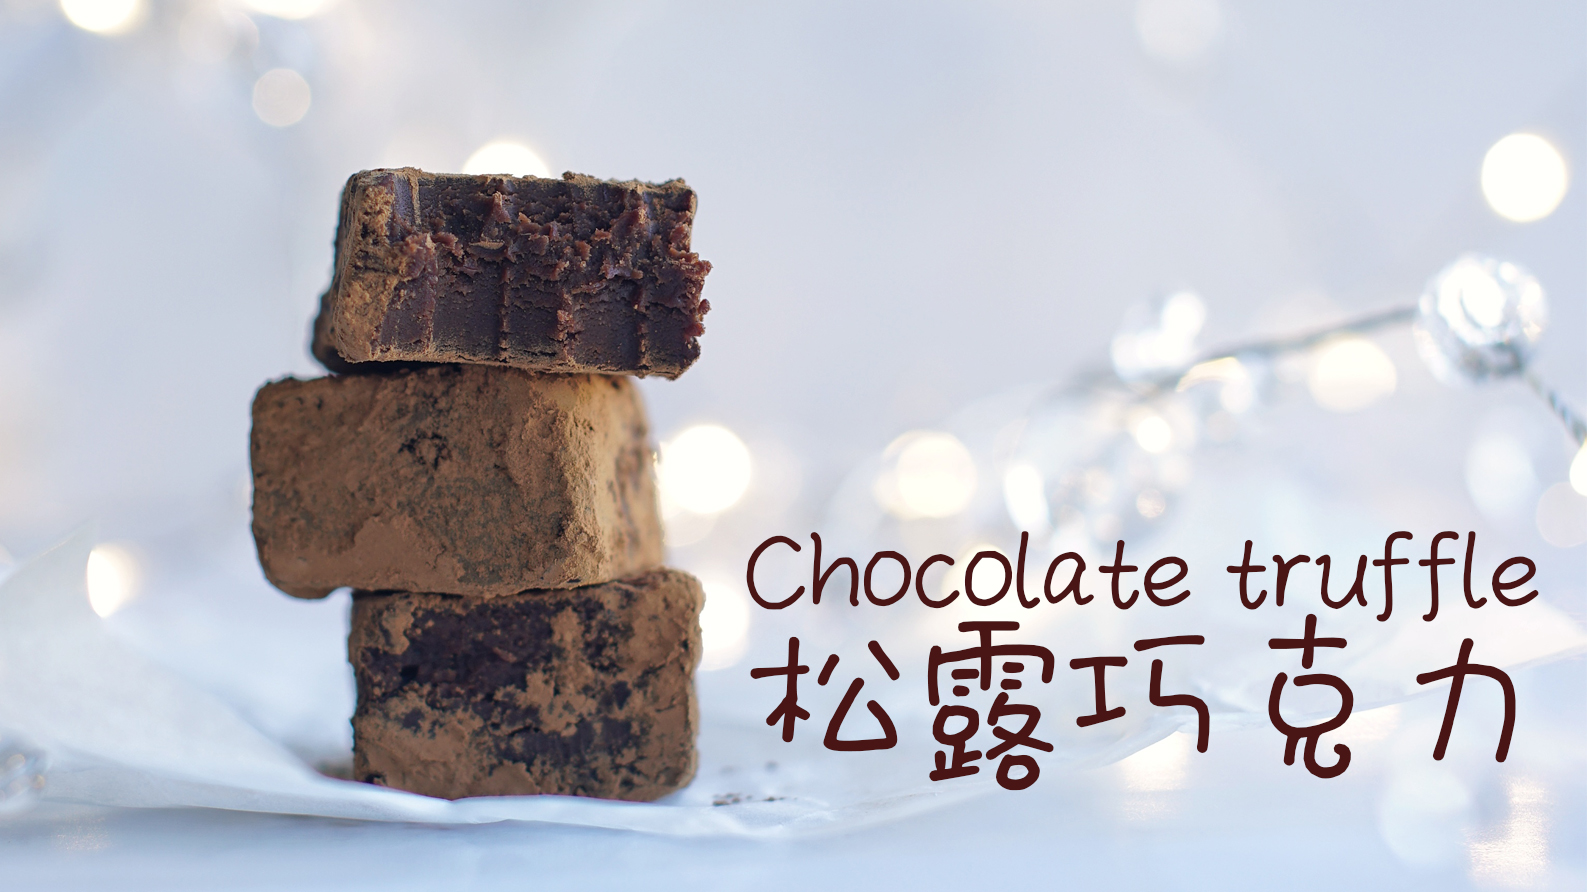 简单几步做出丝滑浓郁，入口即化的松露巧克力Chocolate truffle